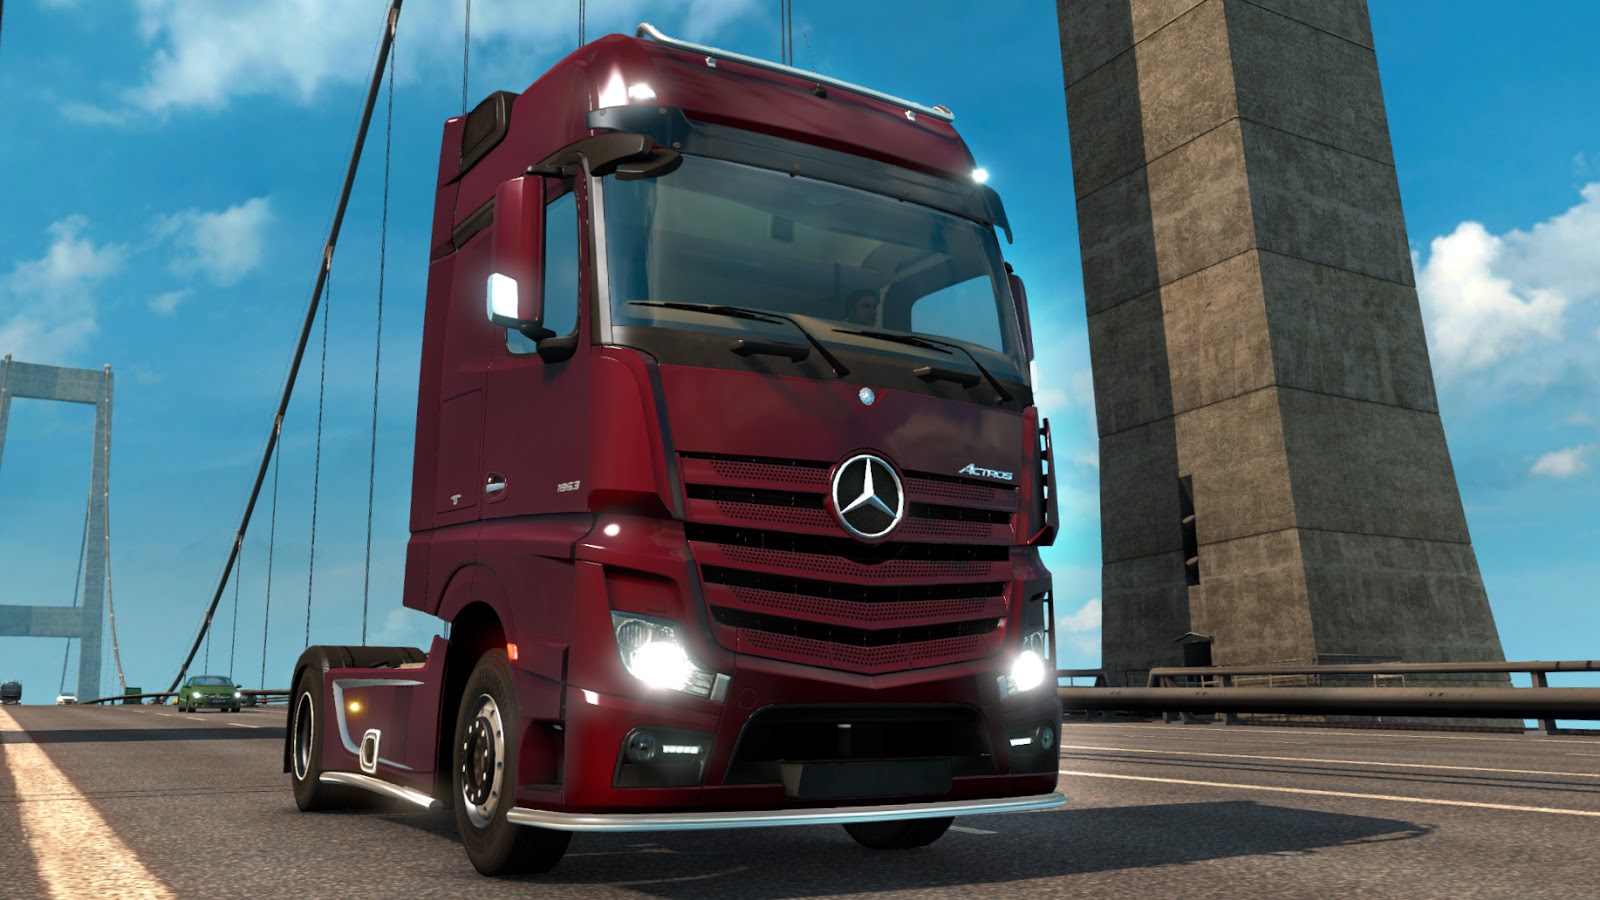 Euro Truck Simulator 2 Trailer Bug Patch Fix